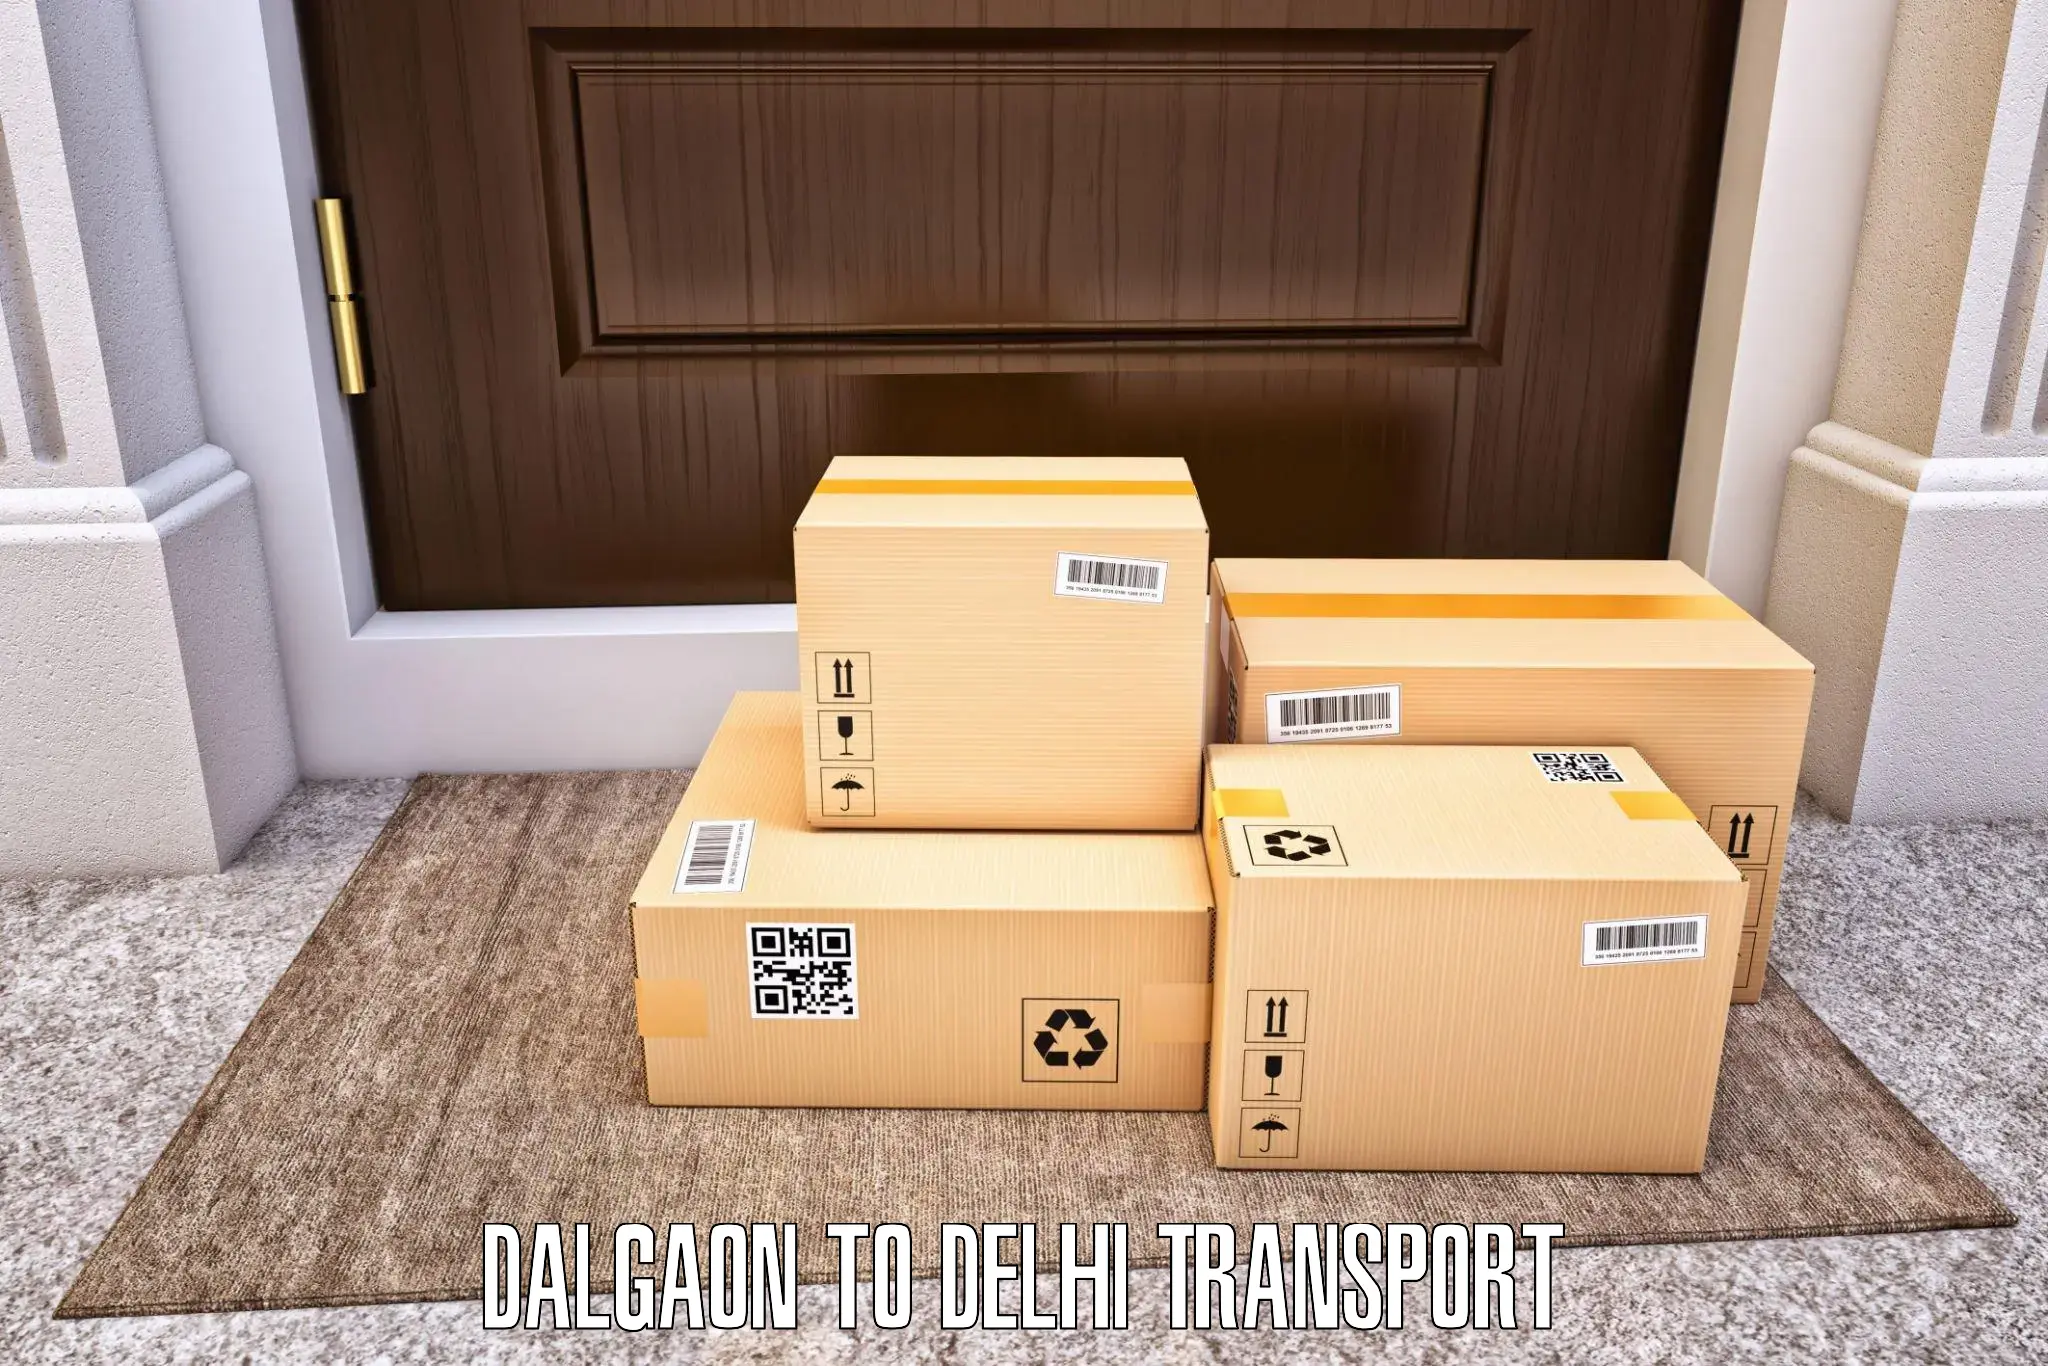 Door to door transport services Dalgaon to Kalkaji